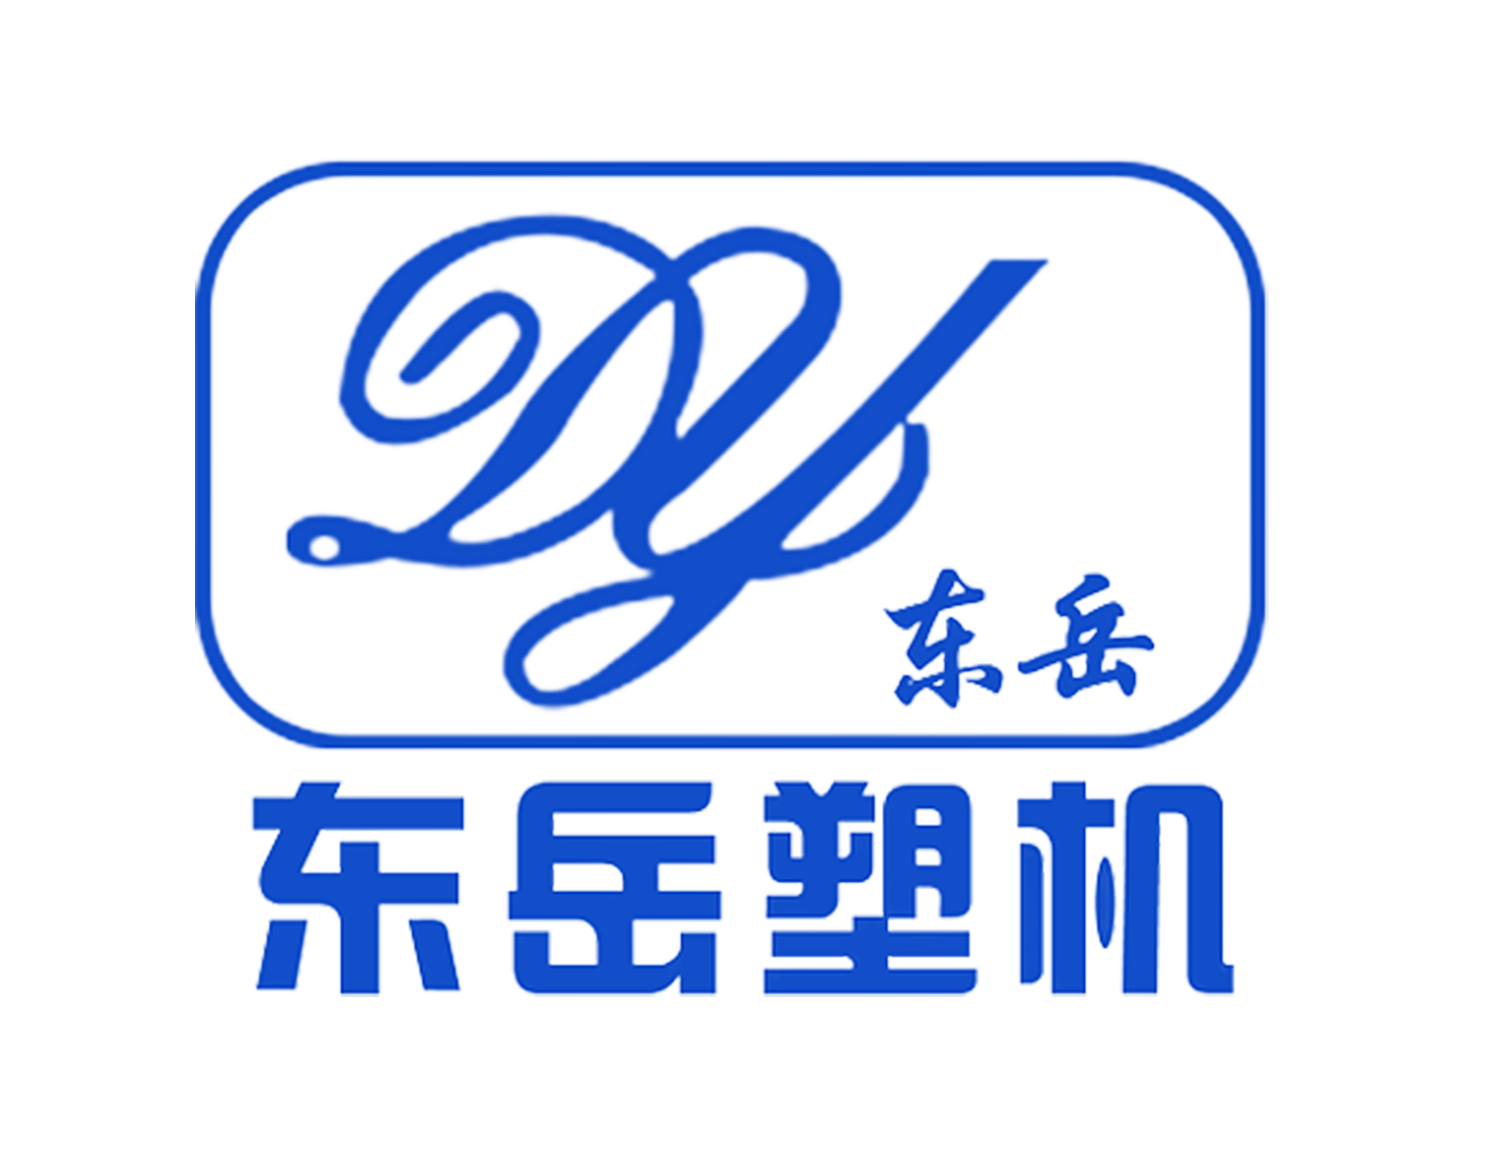 Shijiazhuang Dongyue Electrical Co., LTD